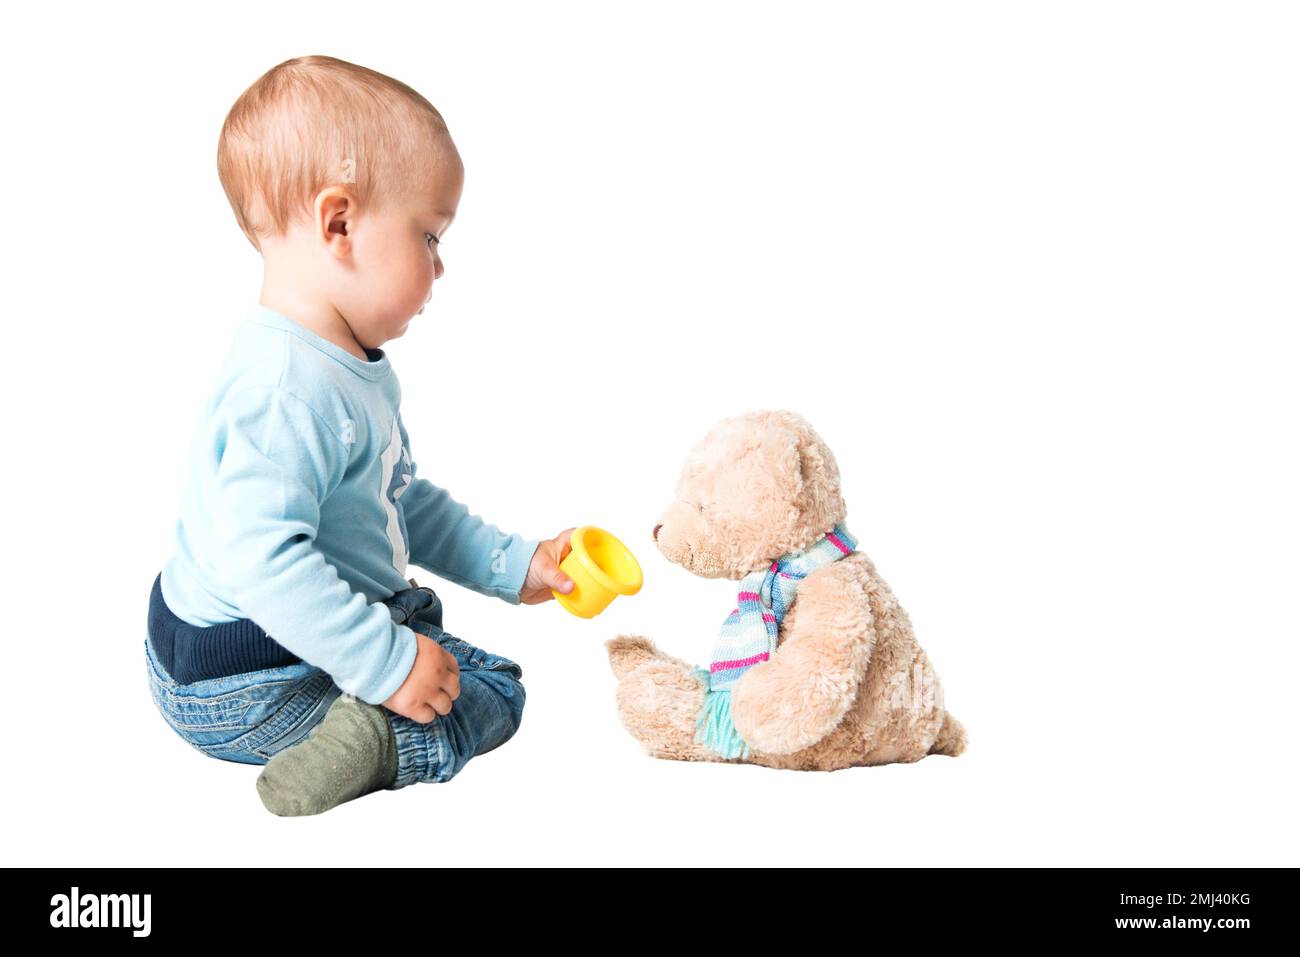 Un garçon d'un an nourrissant son ours en peluche, isolé sur fond blanc Banque D'Images